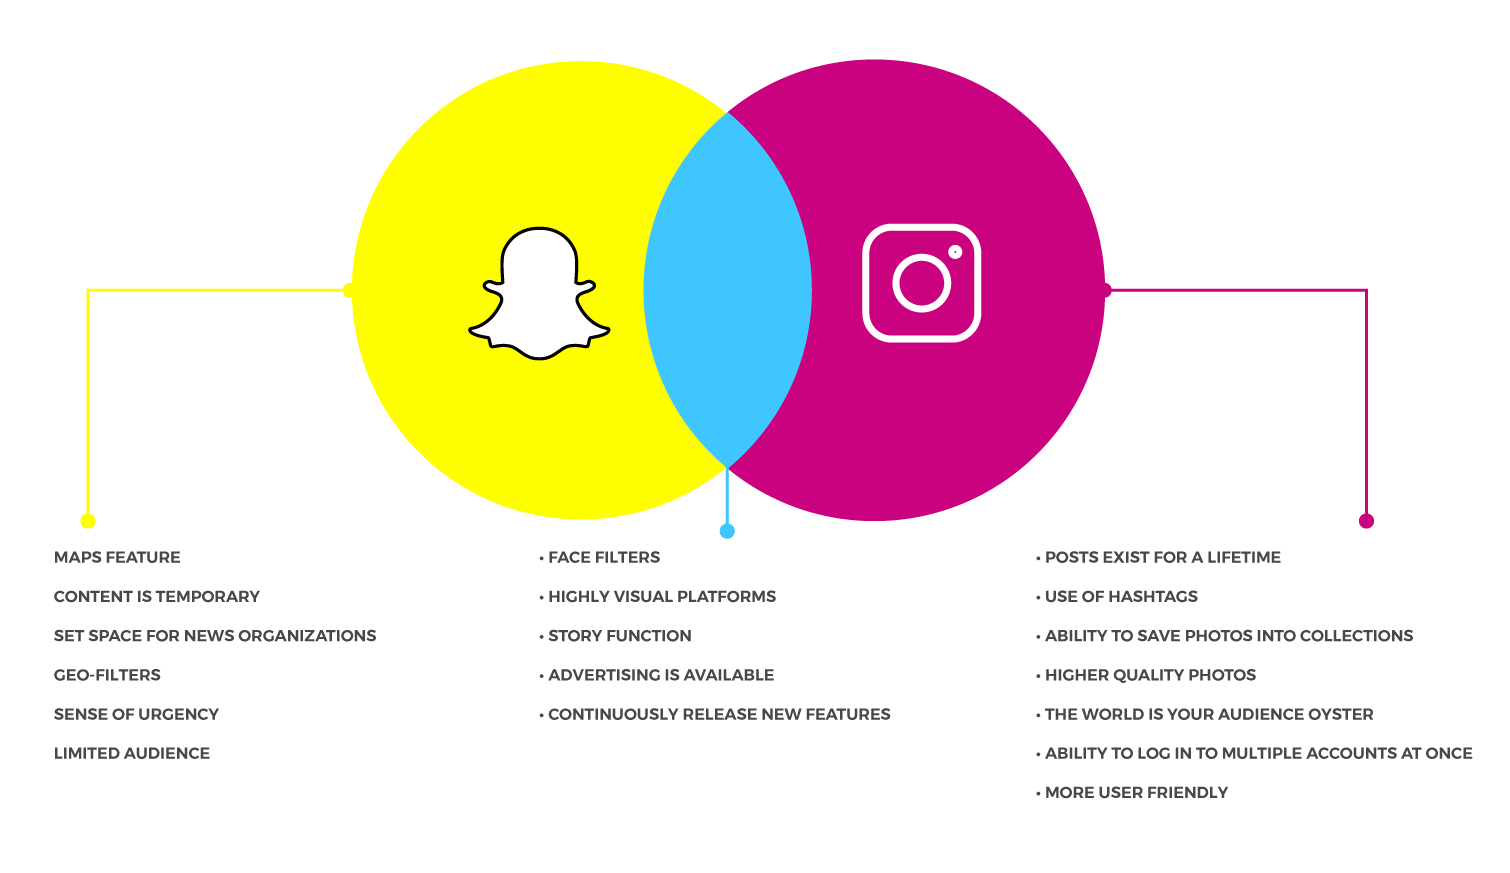 Snapchat vs Instagram venn diagram